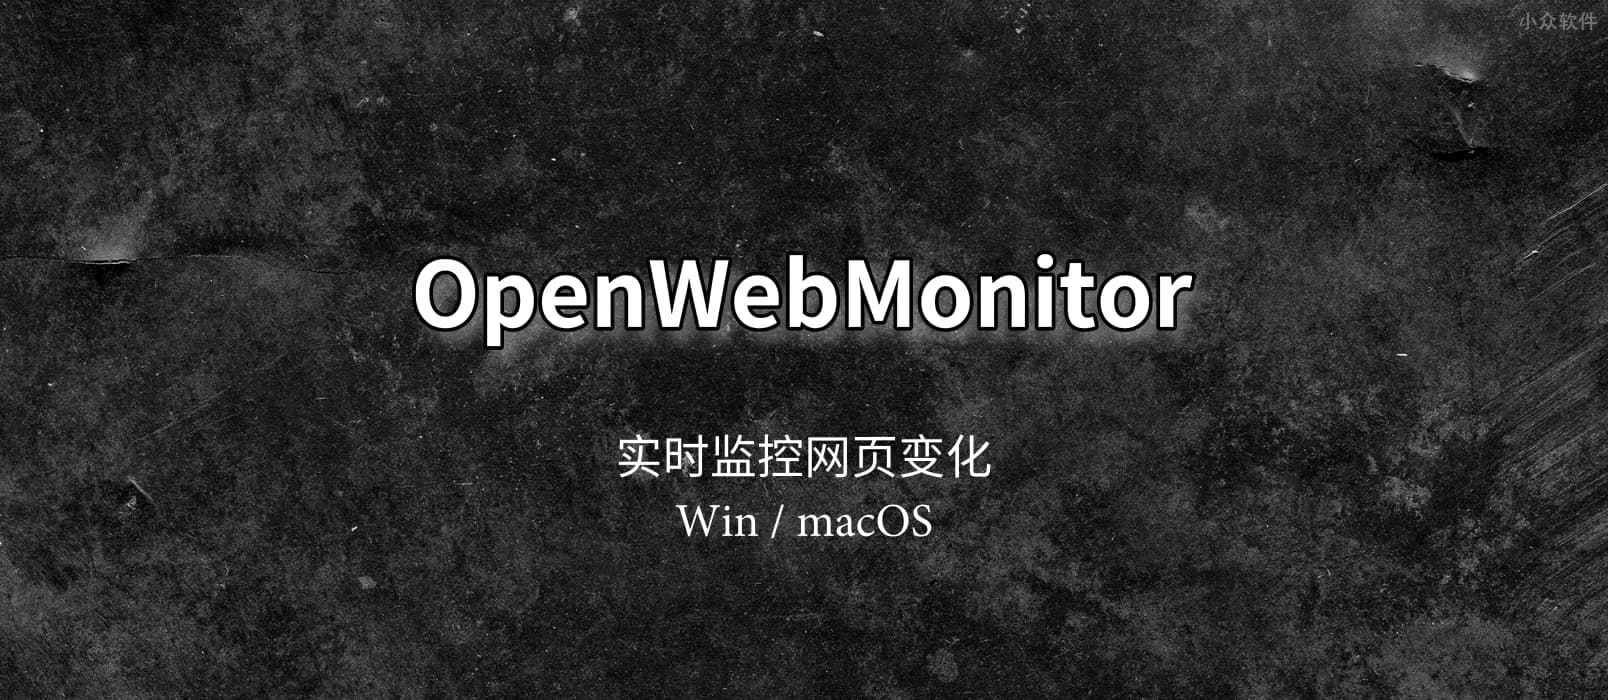 OpenWebMonitor – 实时监控网页变化，并报警通知[Win/macOS]